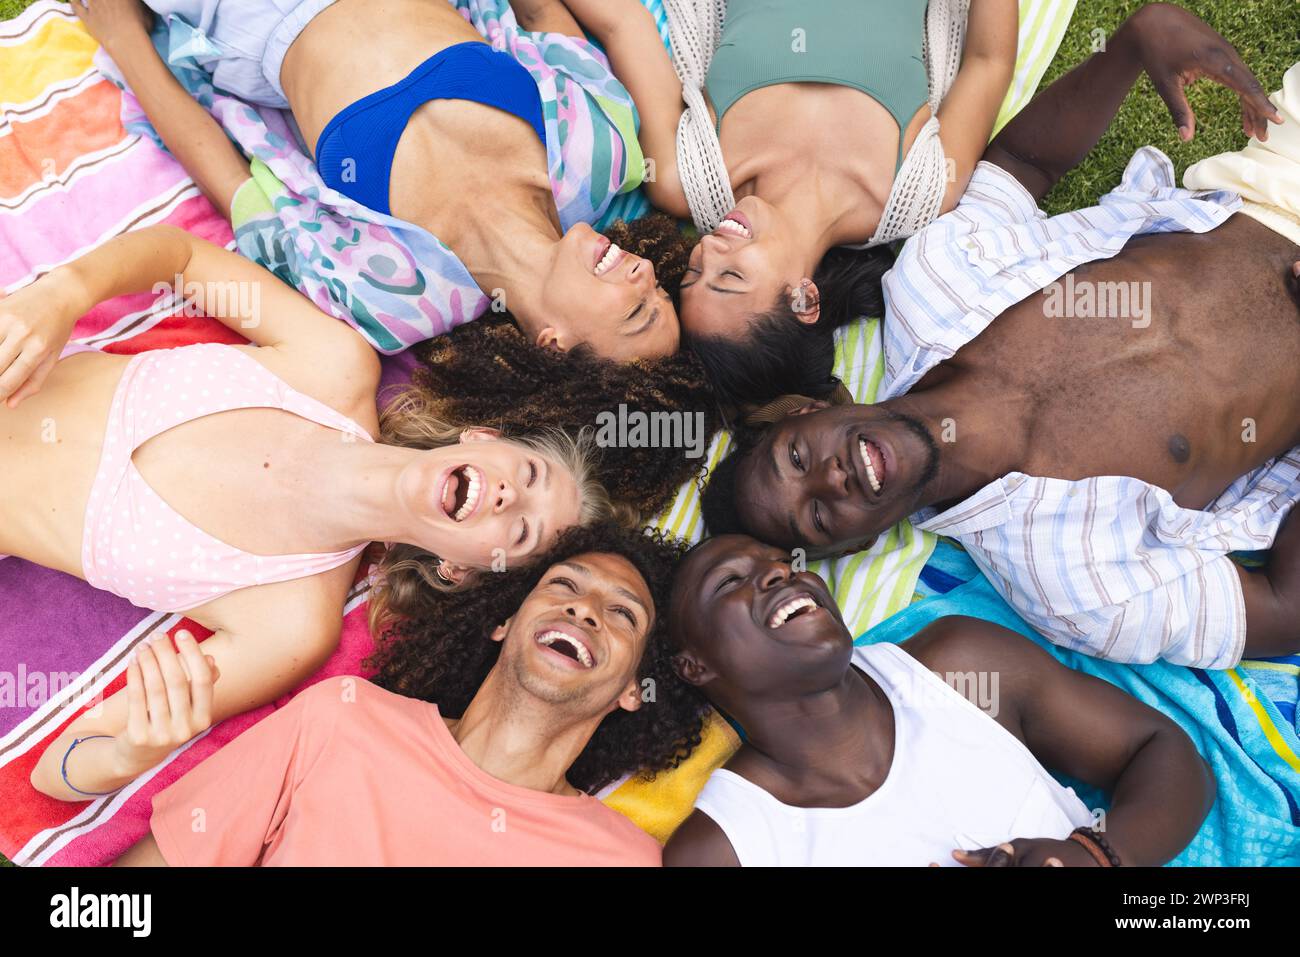 Verschiedene Freunde lachen zusammen, während sie draußen auf einer bunten Decke liegen Stockfoto